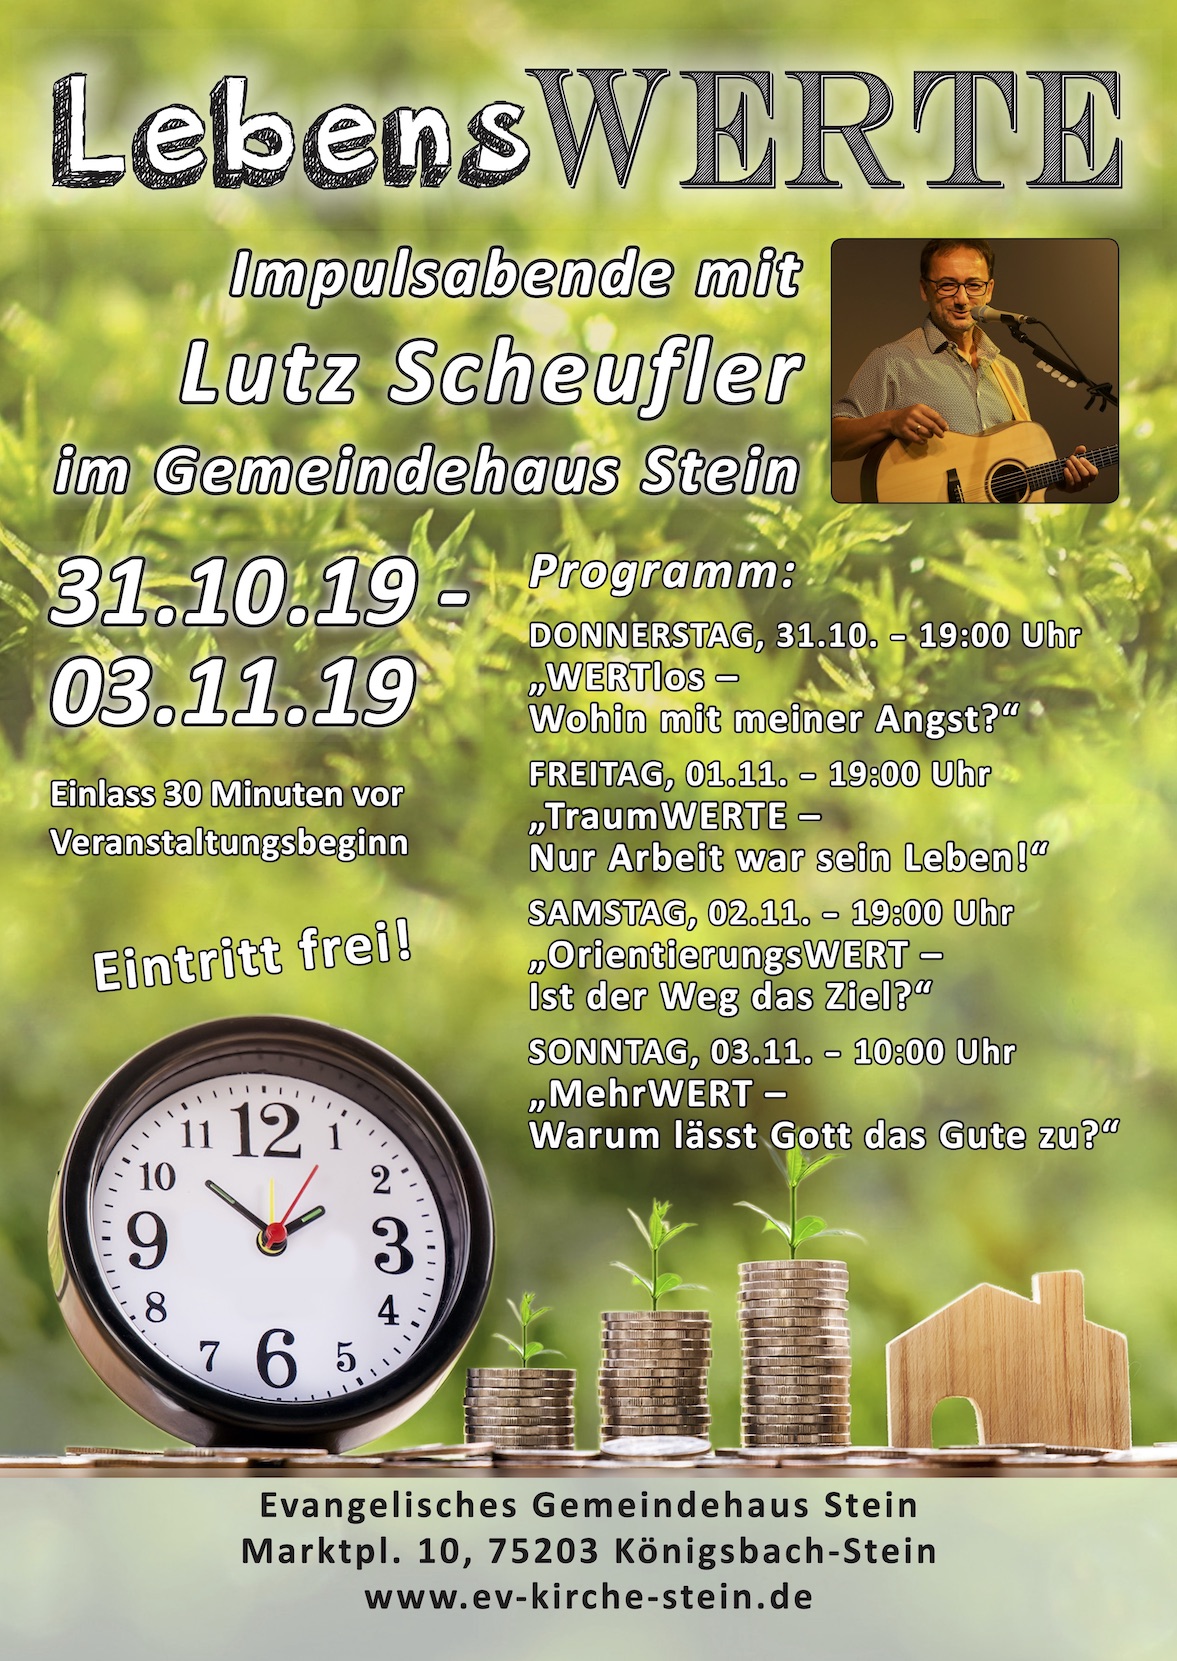 Impulsabende mit Lutz Scheufler 31.10.-3.11.2019 in Königsbach-Stein